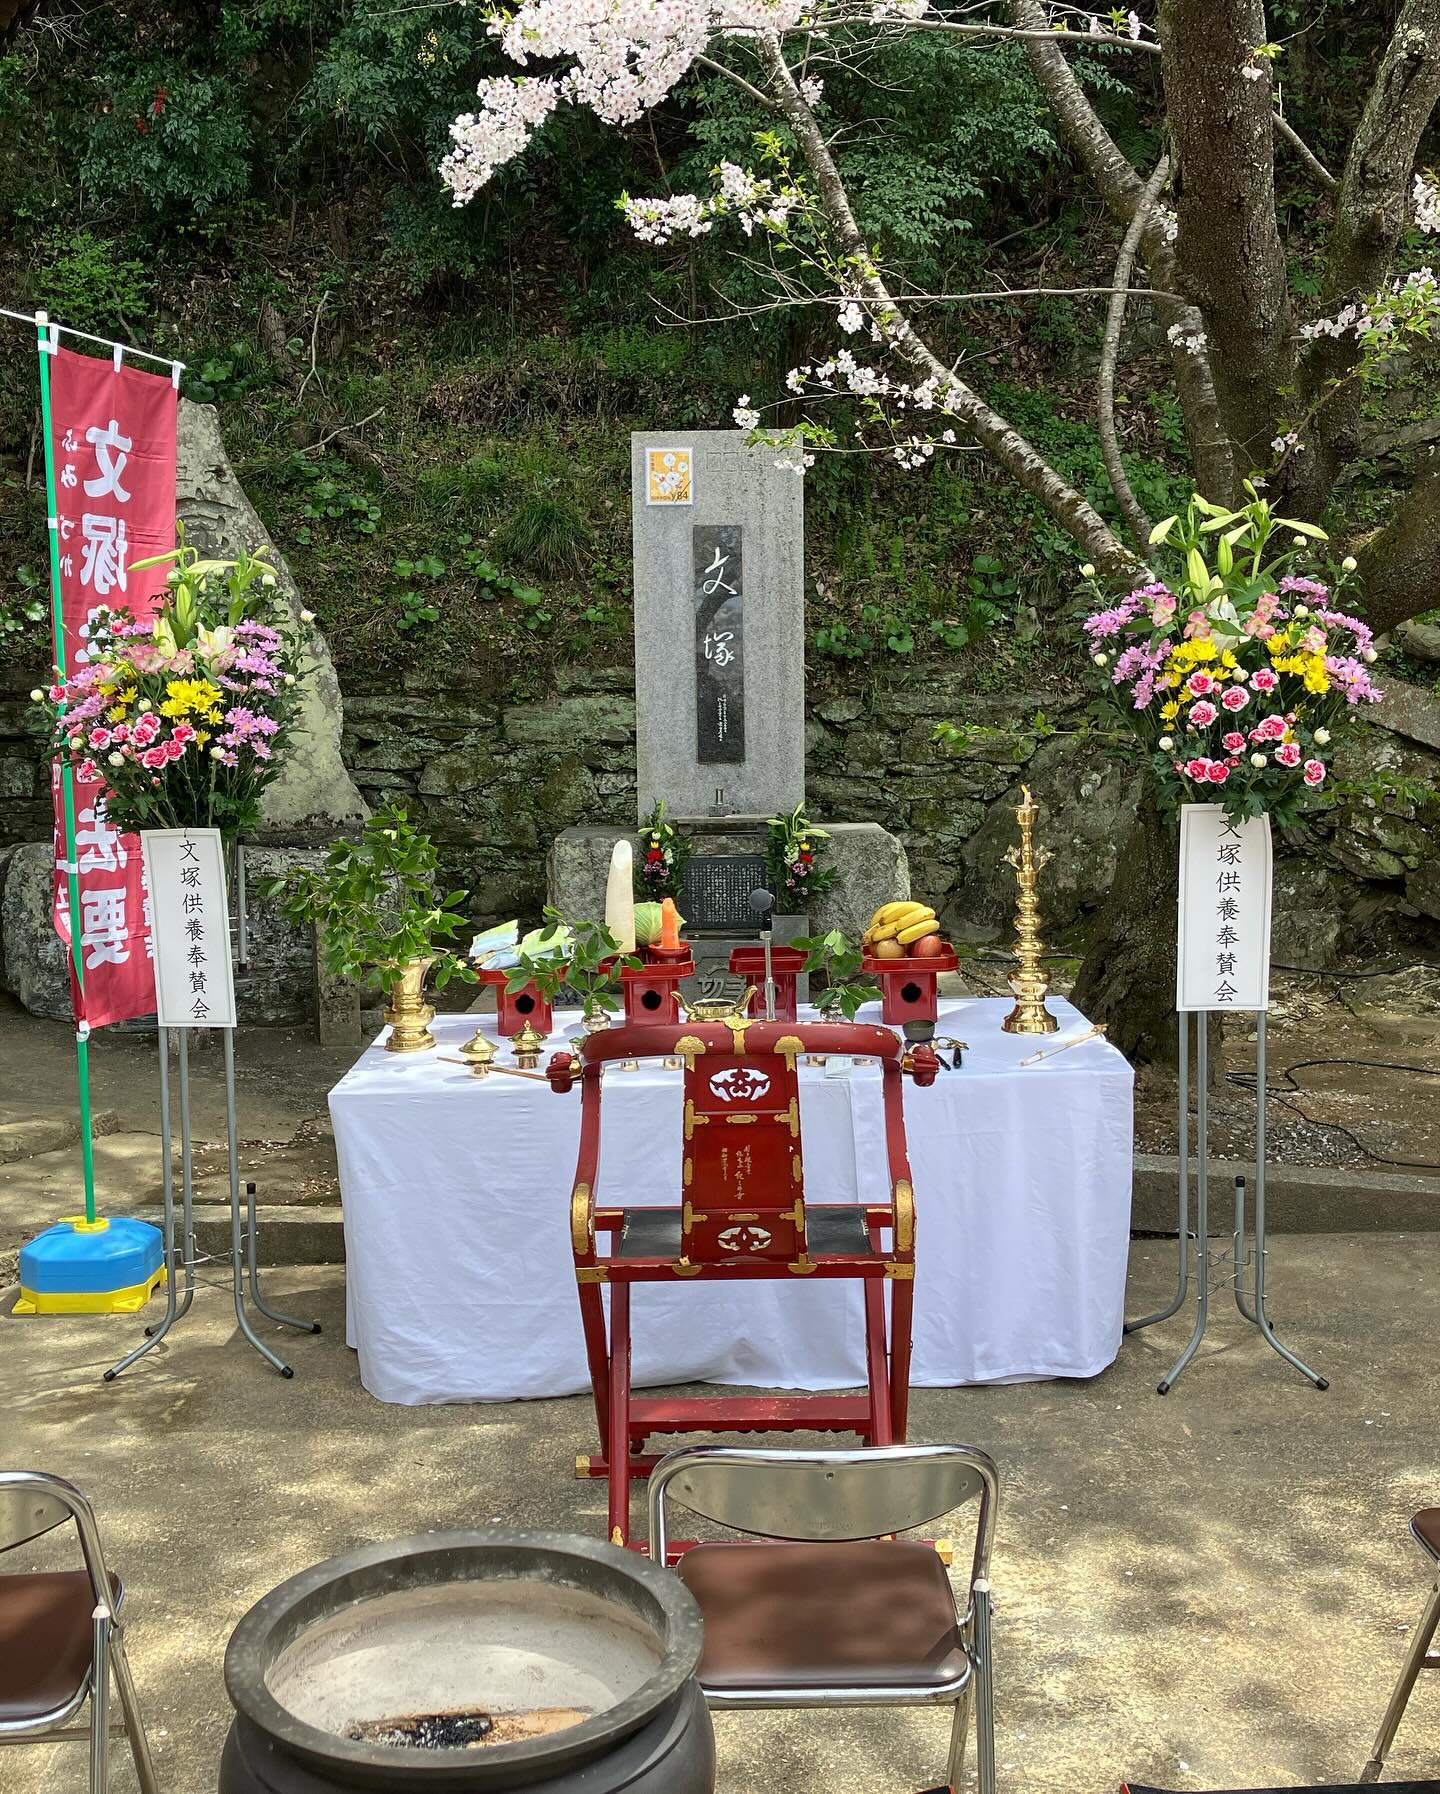 毎年、桜の季節に開催される「迷い子郵便供養会」。今年も関西地区郵便輸送協会の会長としてお焚き上げ、参列させていただきました。合掌#日本でここだけ#紀三井寺の桜#文供養会#58回目#魂を慰める#心をつなぐ